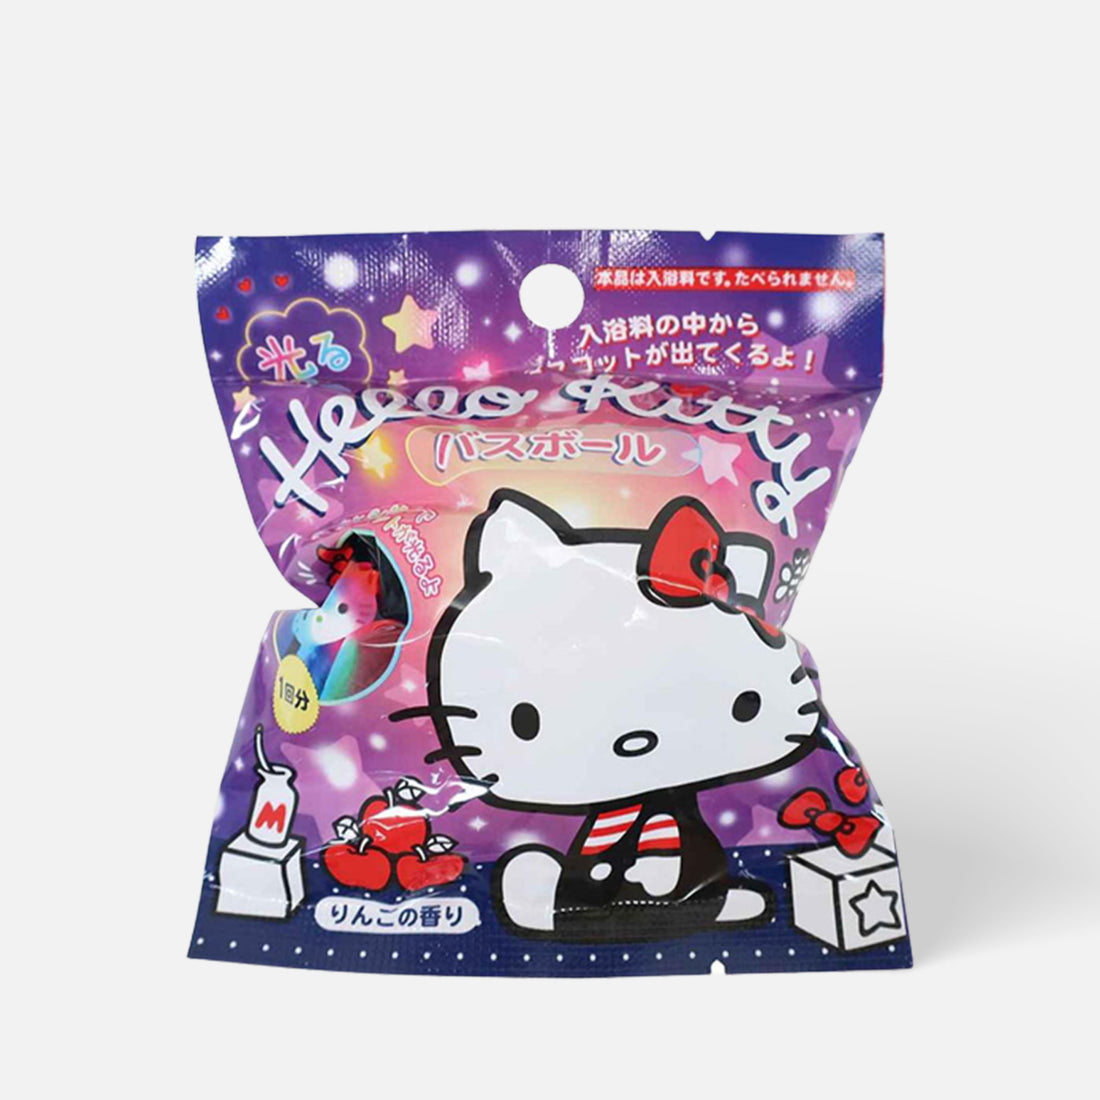 Sanrio Hello Kitty Bath Bomb w/toy